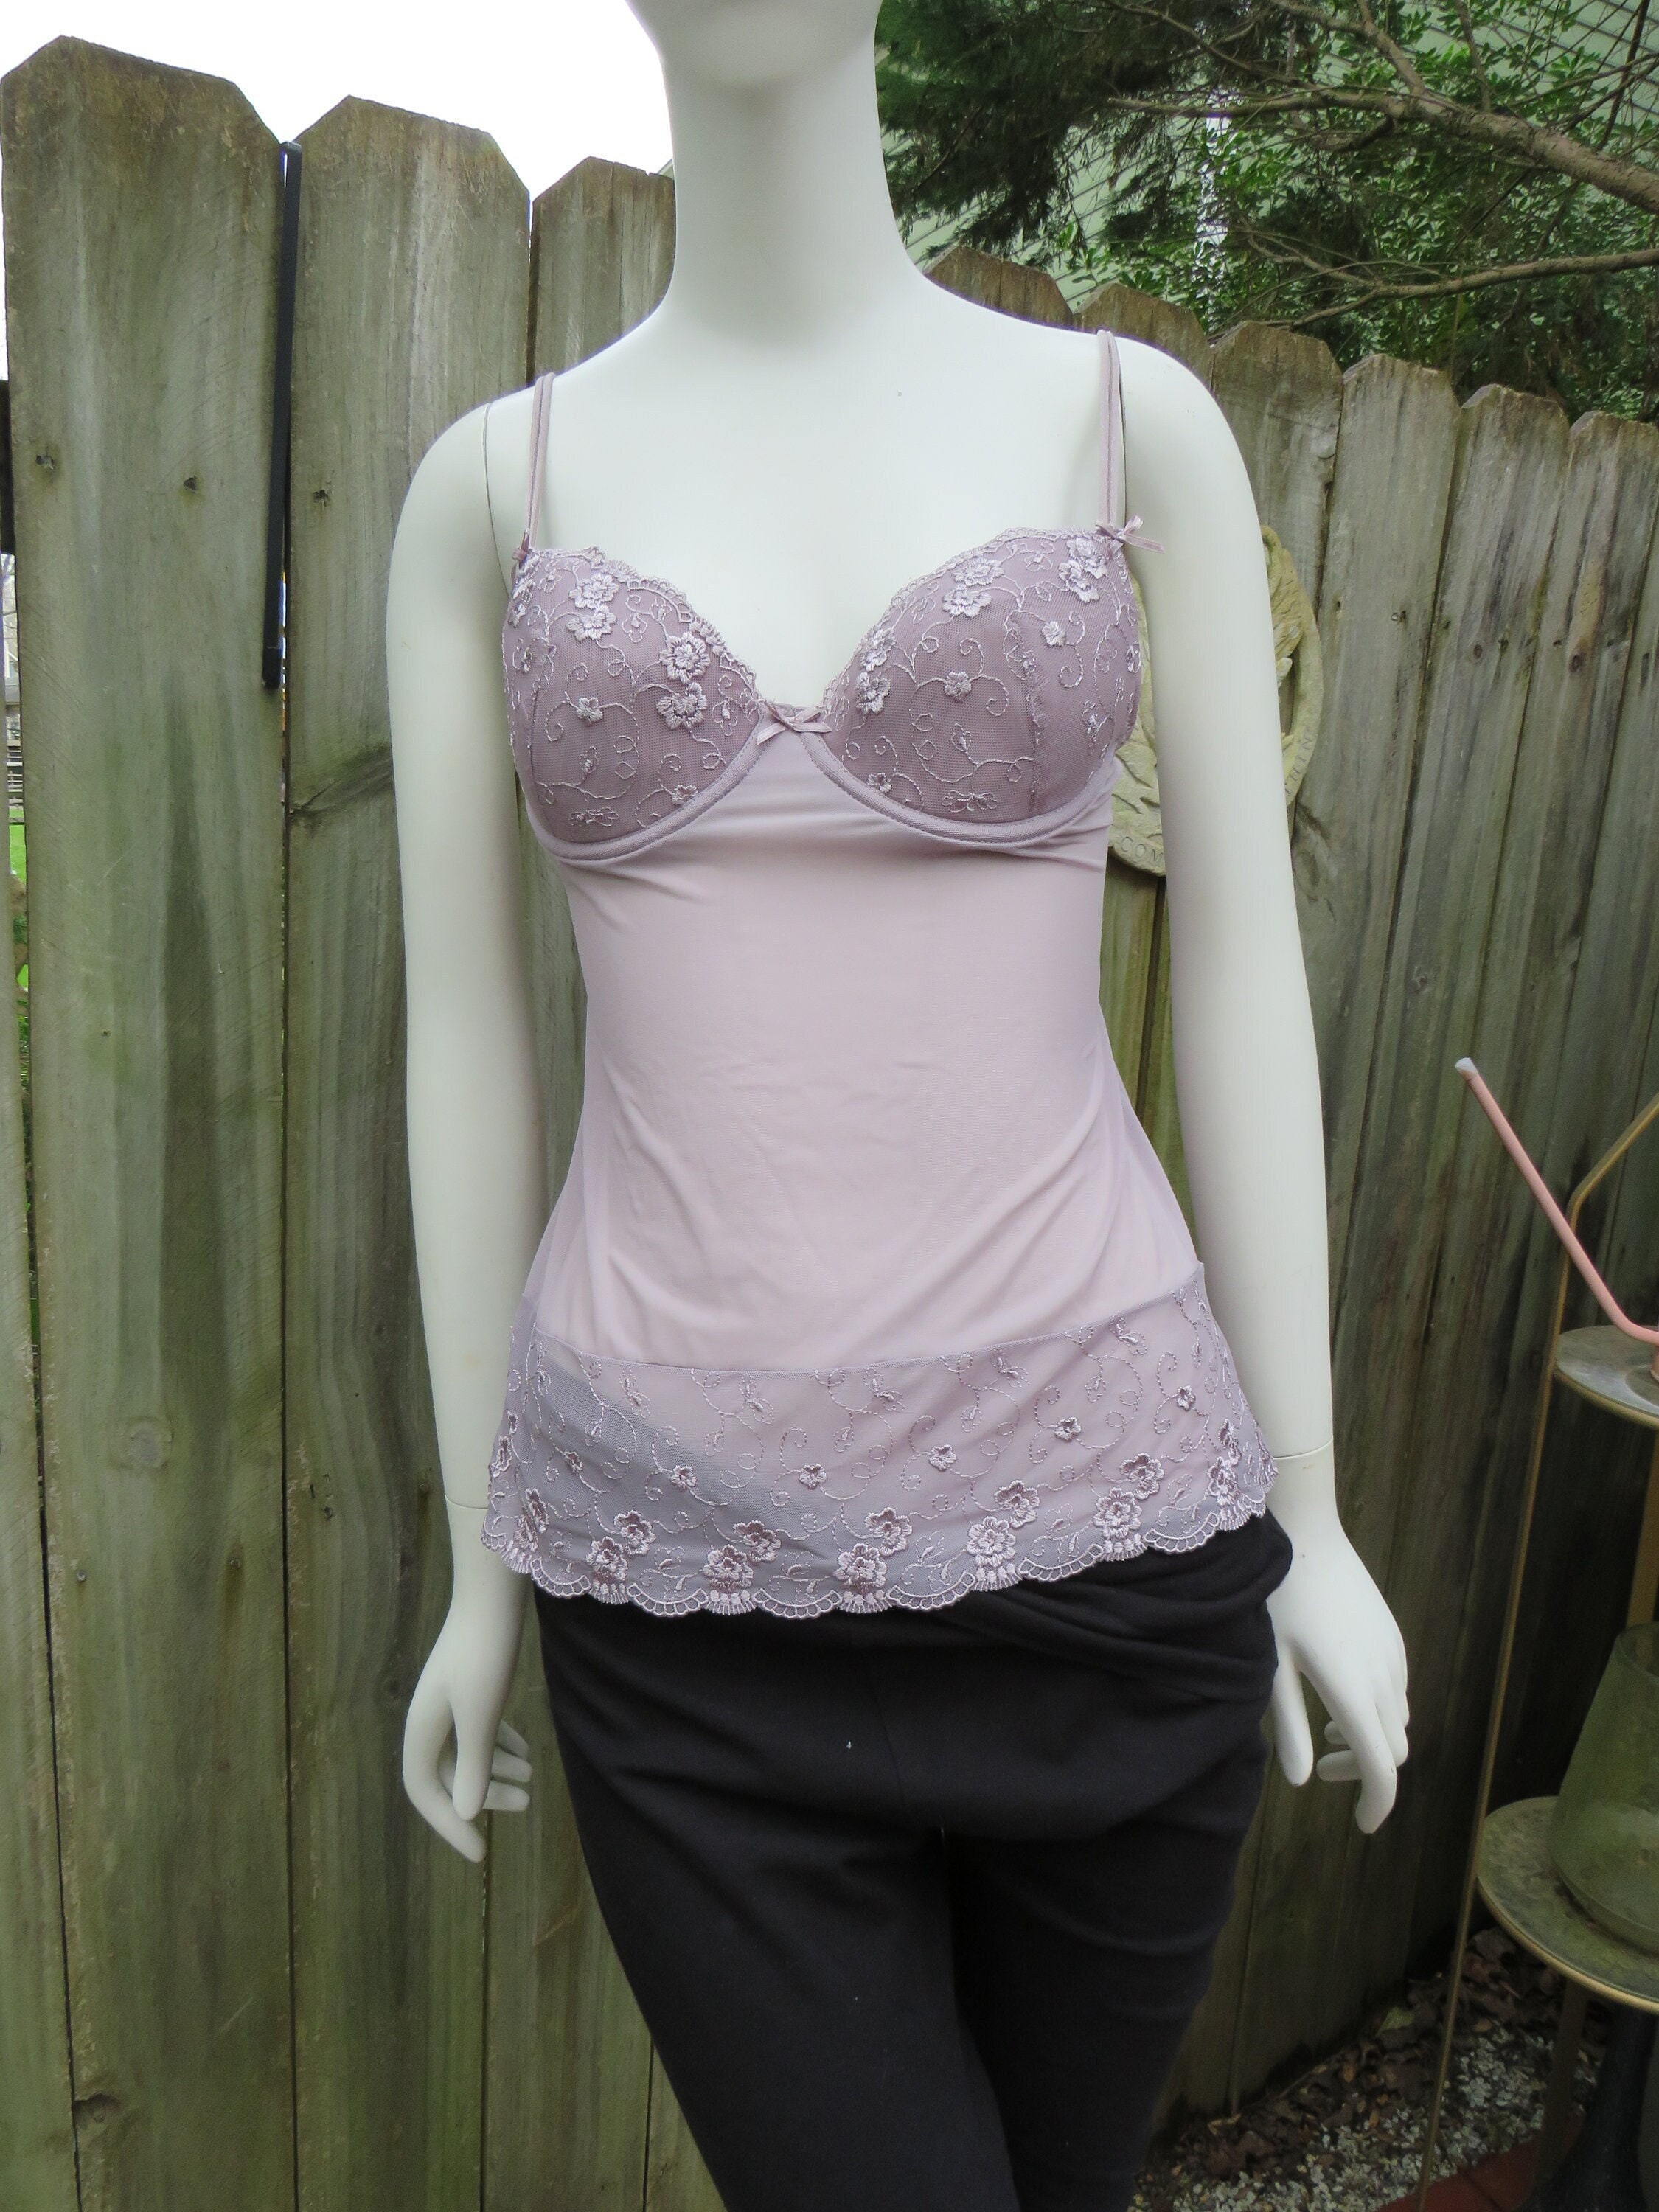 Jolinesse Grayish Pink Underwire Bra Camisole Size GB/IE 34 B Eur